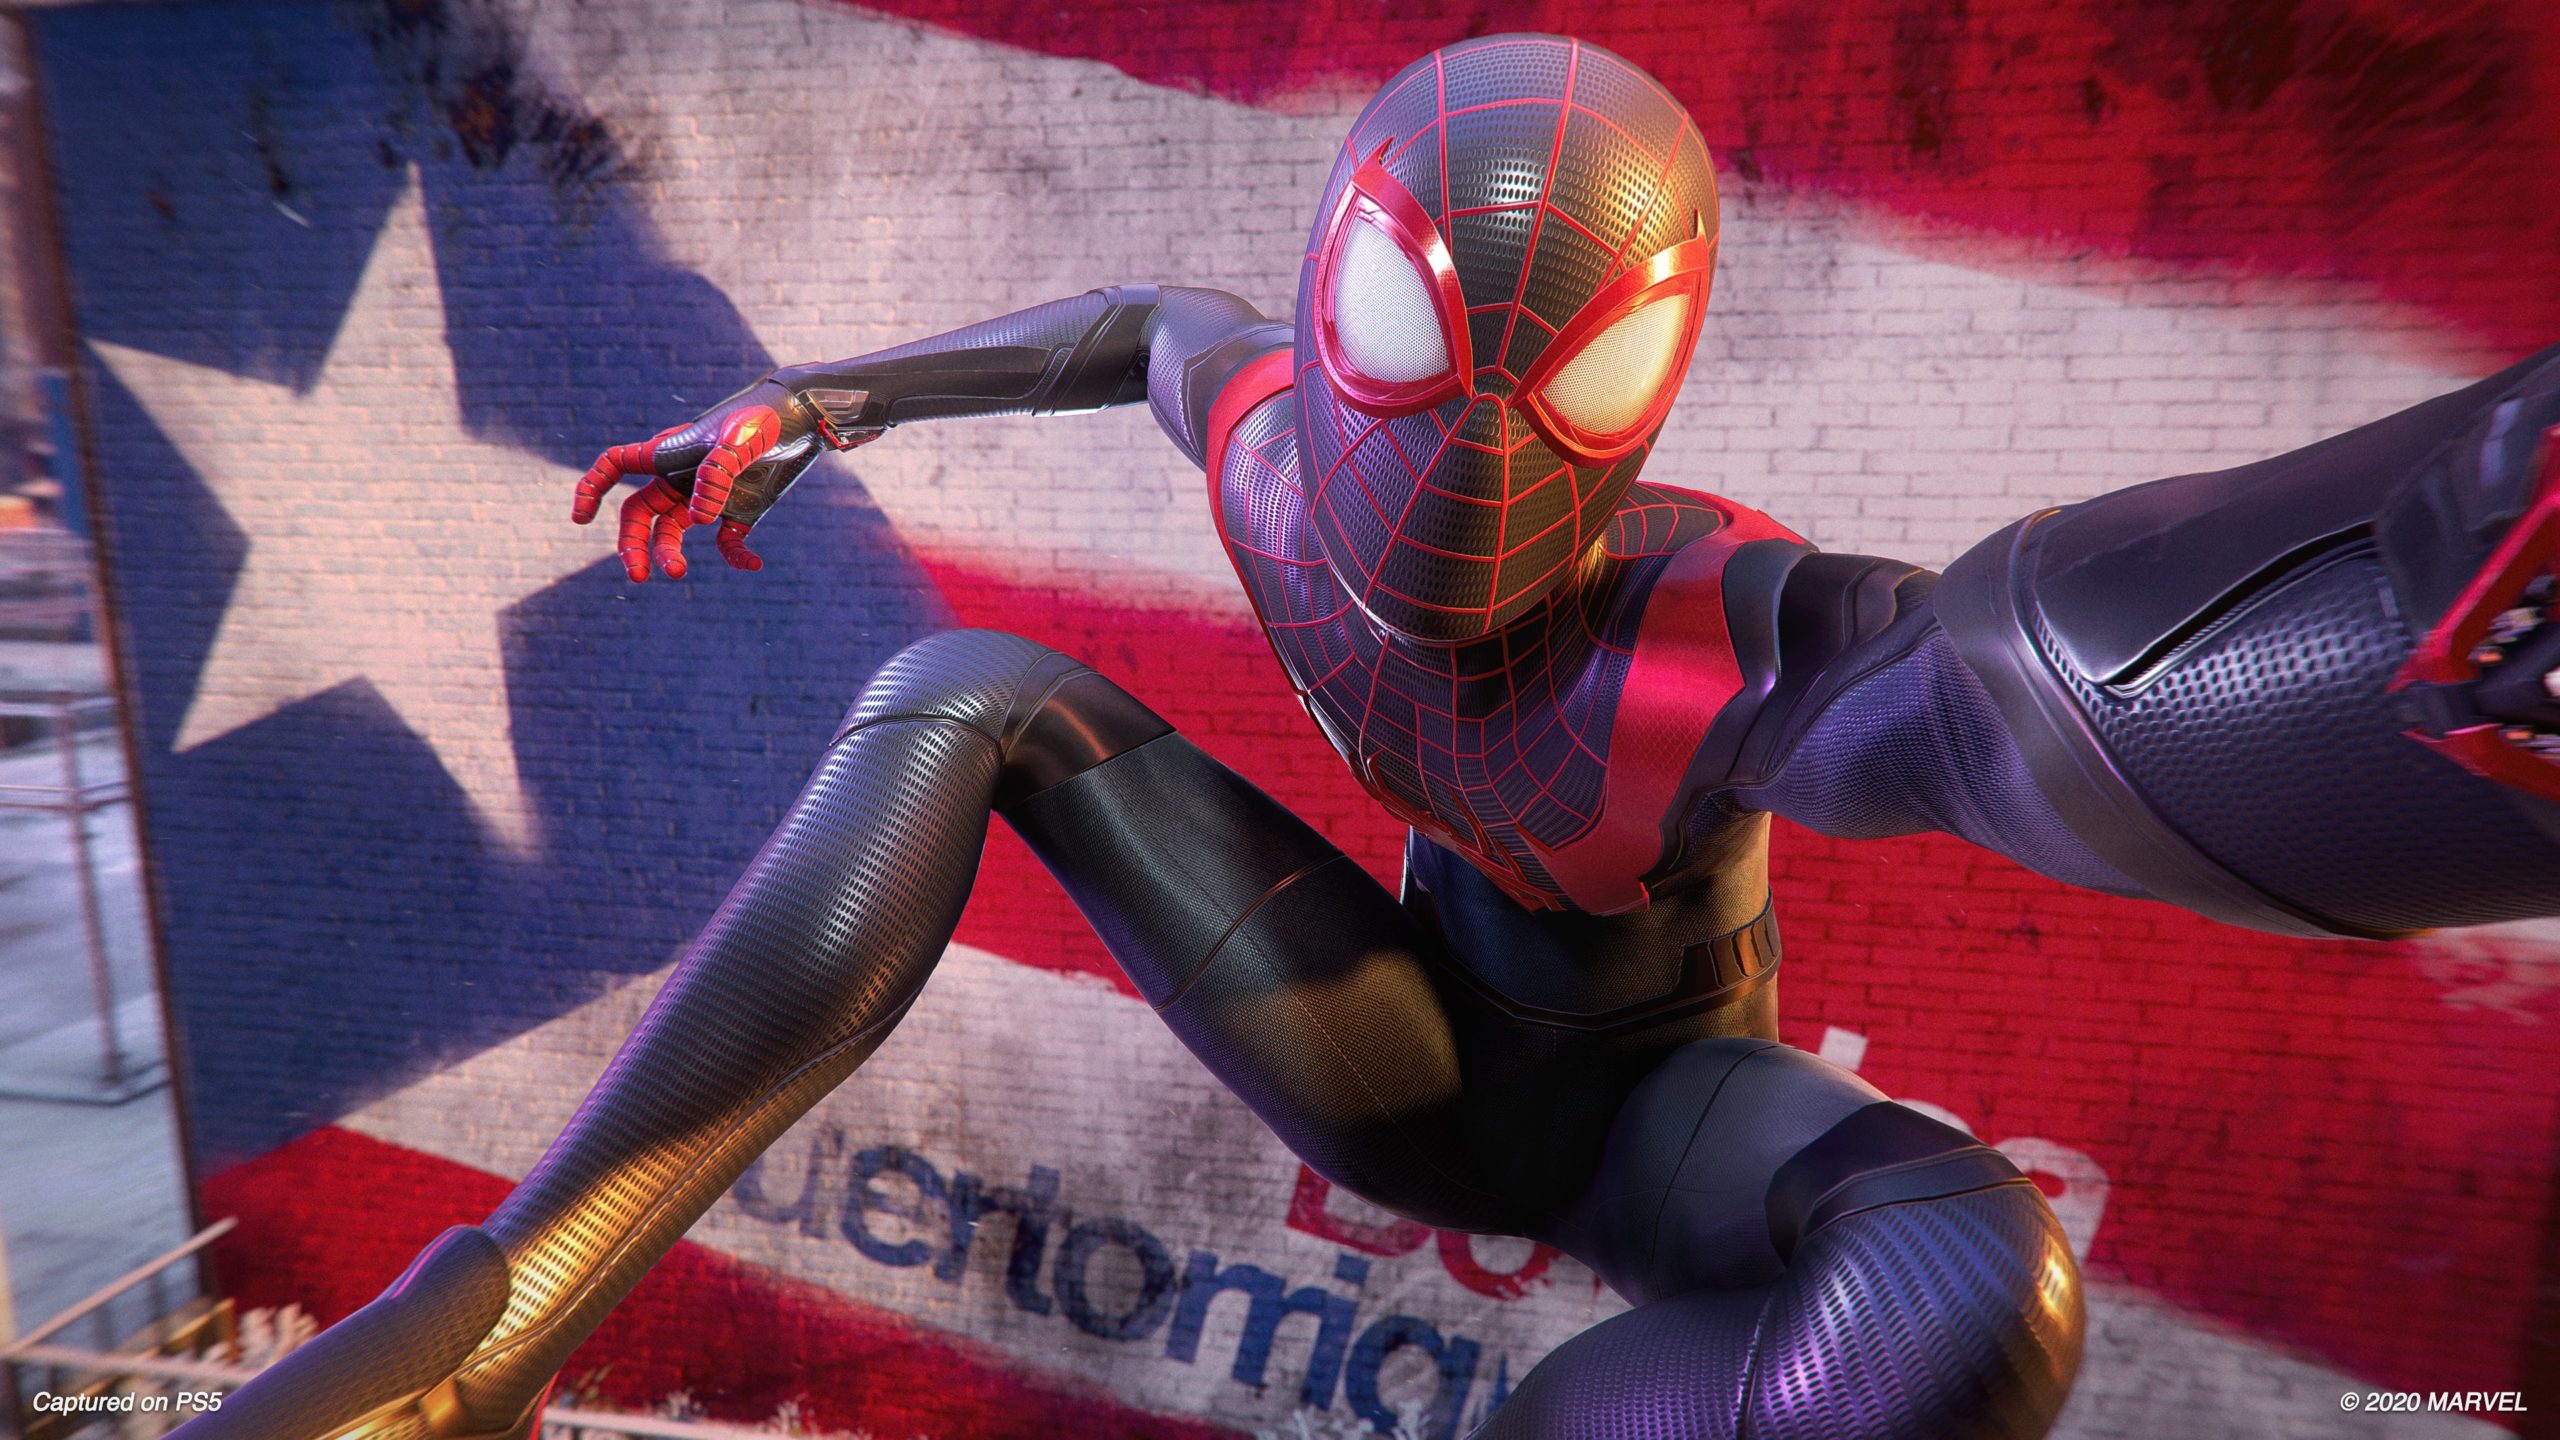 Nosso herói Marvel's Spider-Man I Modder foi banido após substituir as  bandeiras de arco-íris